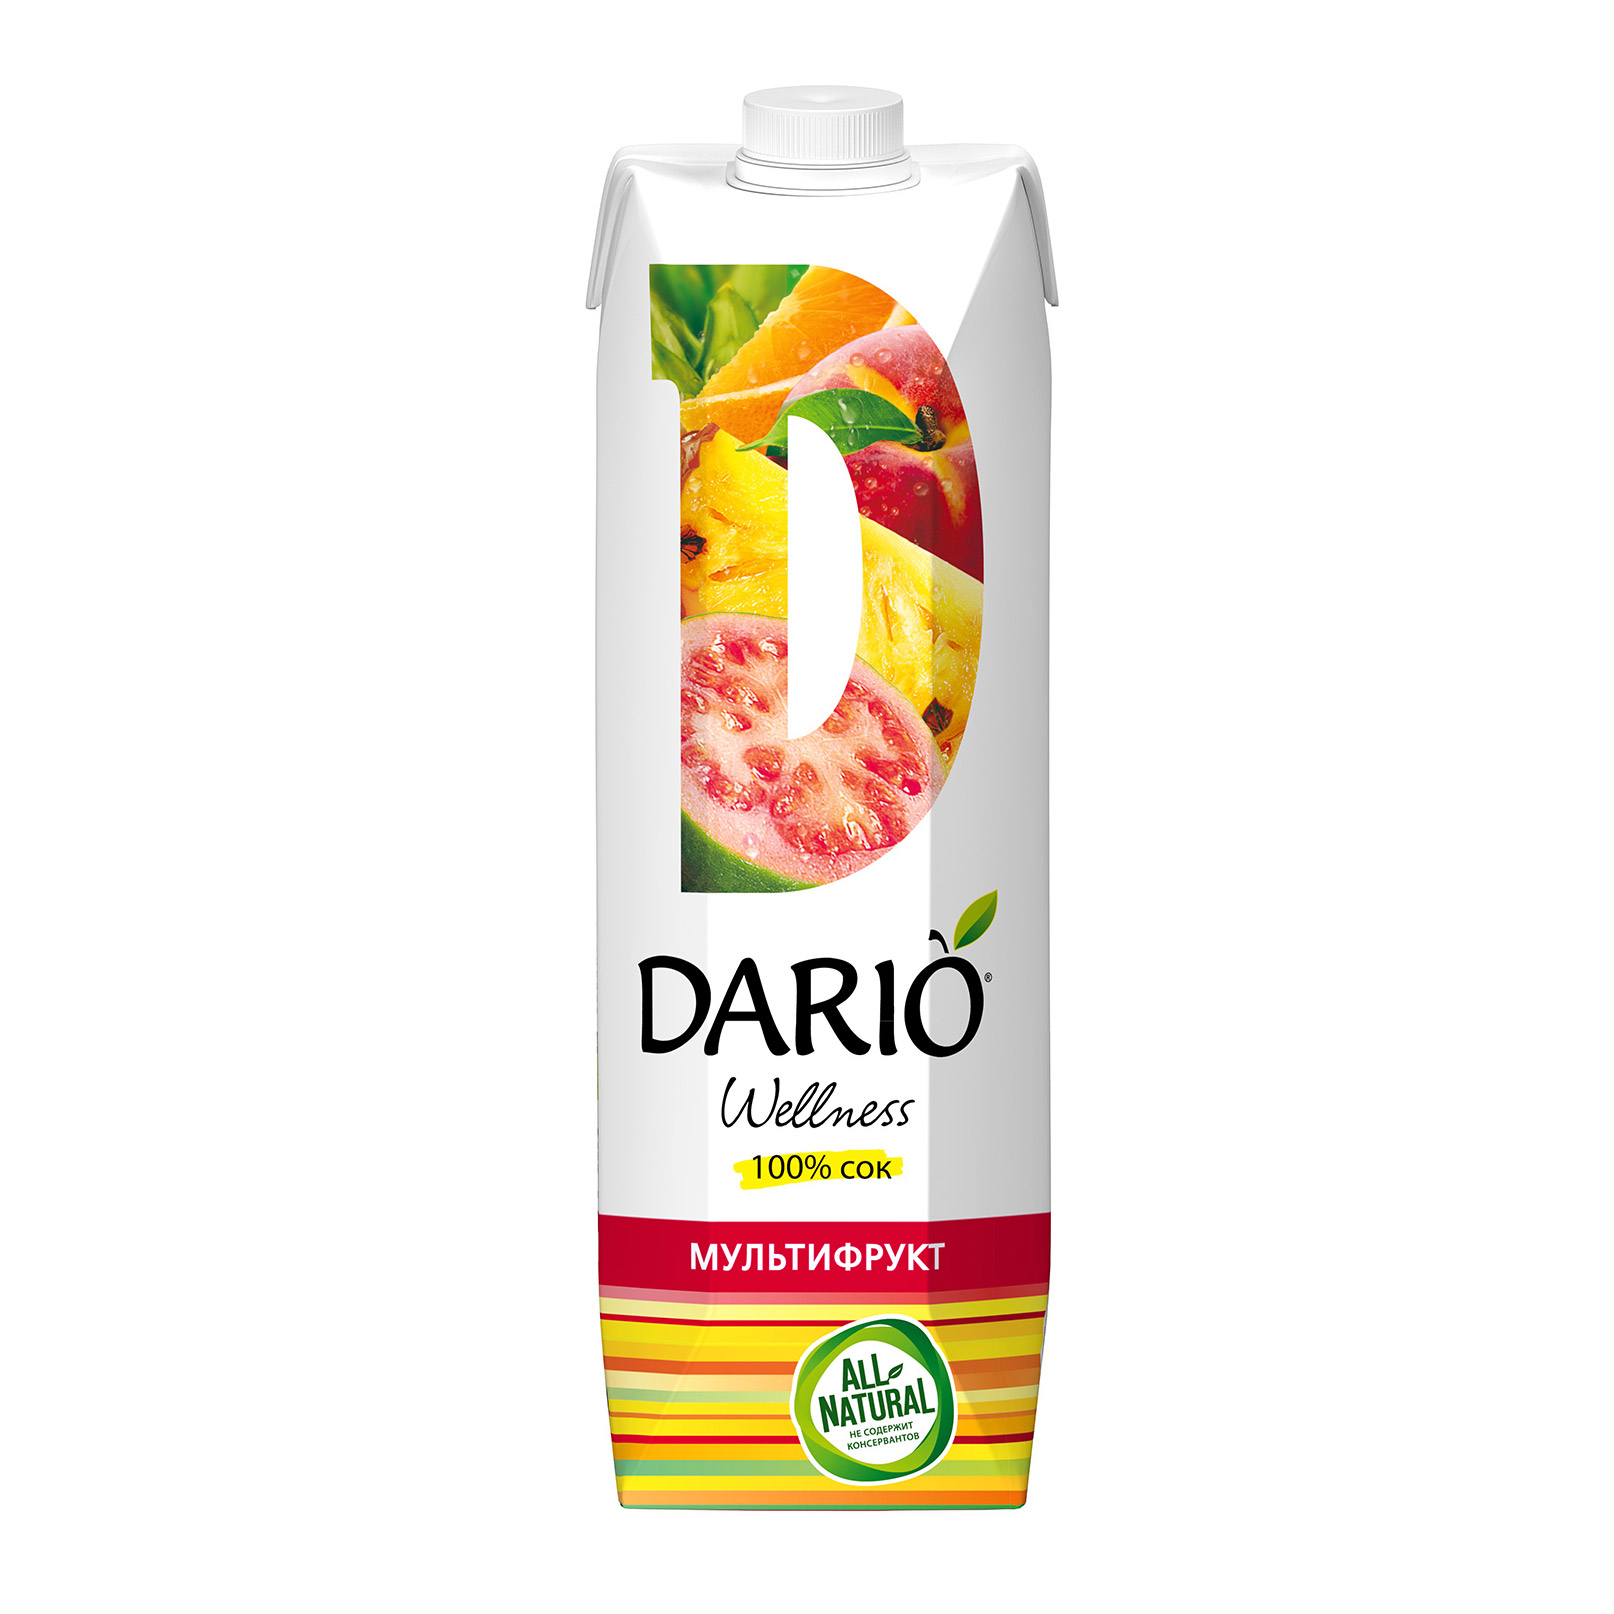 сок dario wellness томатный с солью 1 л Нектар Dario Wellness Мультифруктовый 1 л